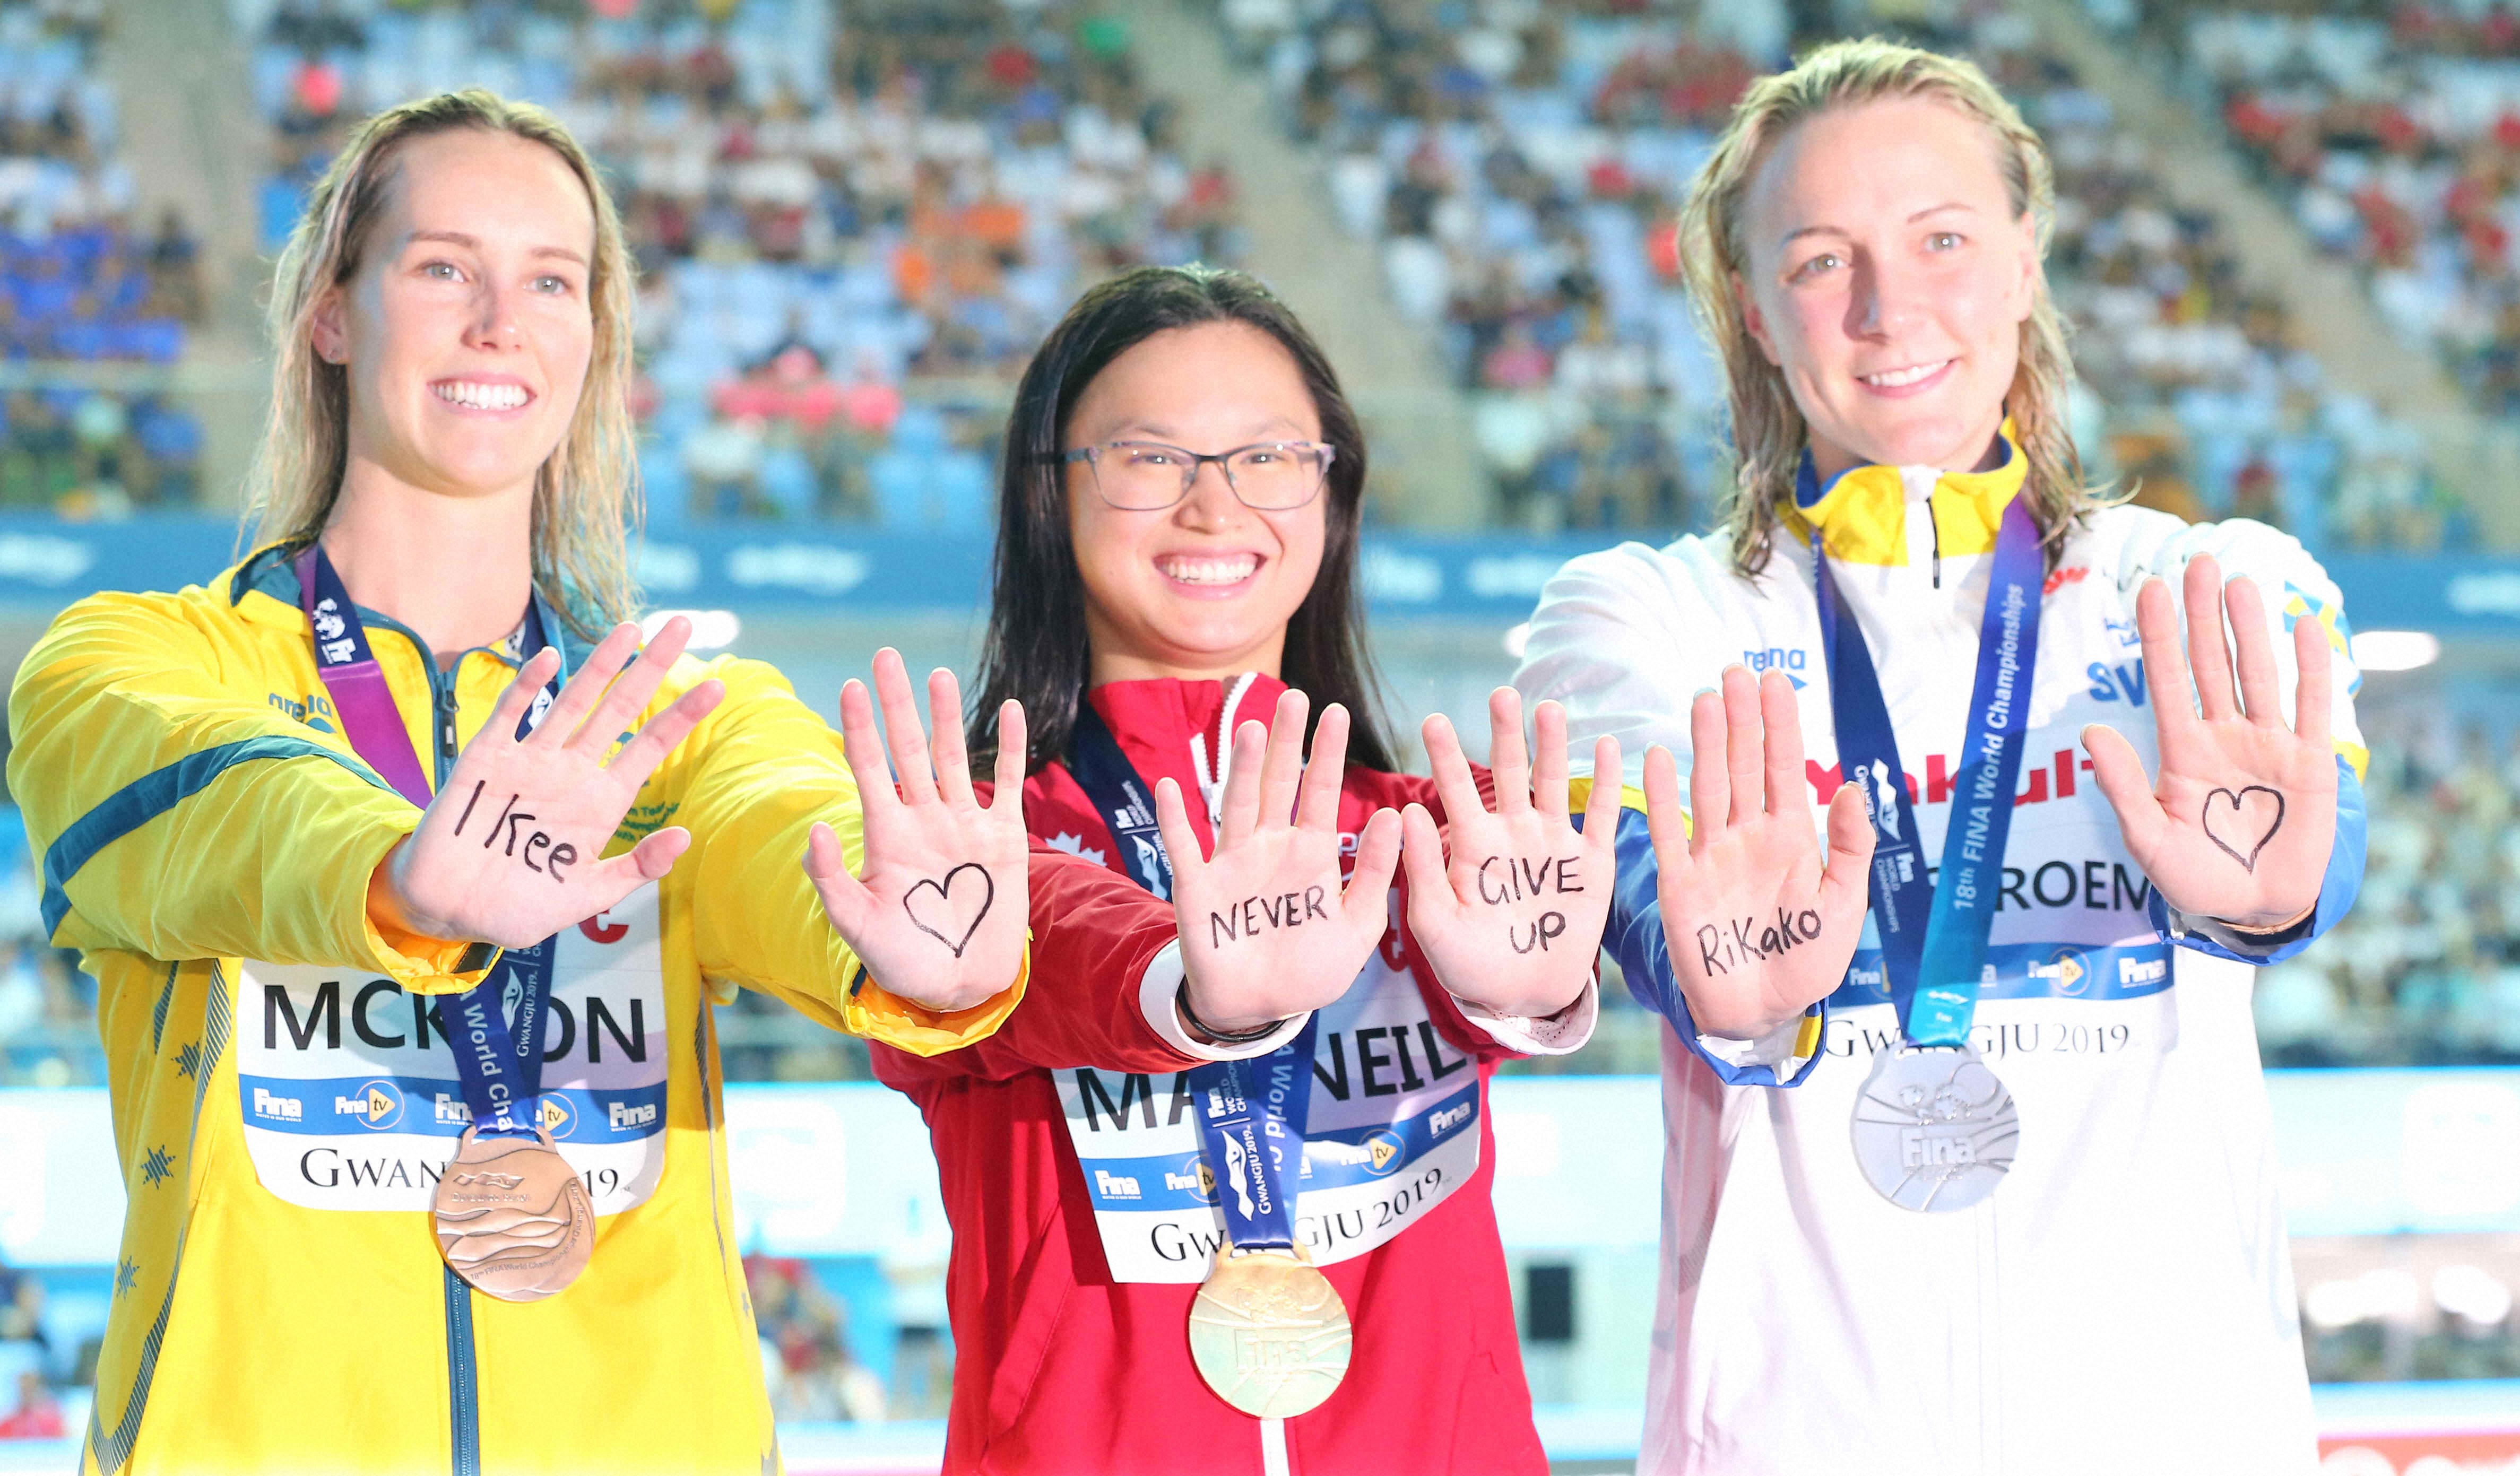 19年世界選手権で闘病中の池江にメッセージを送る(左から)エマ・マキオン、マーガレット・マクニール、ｻﾗ・ショーストロム